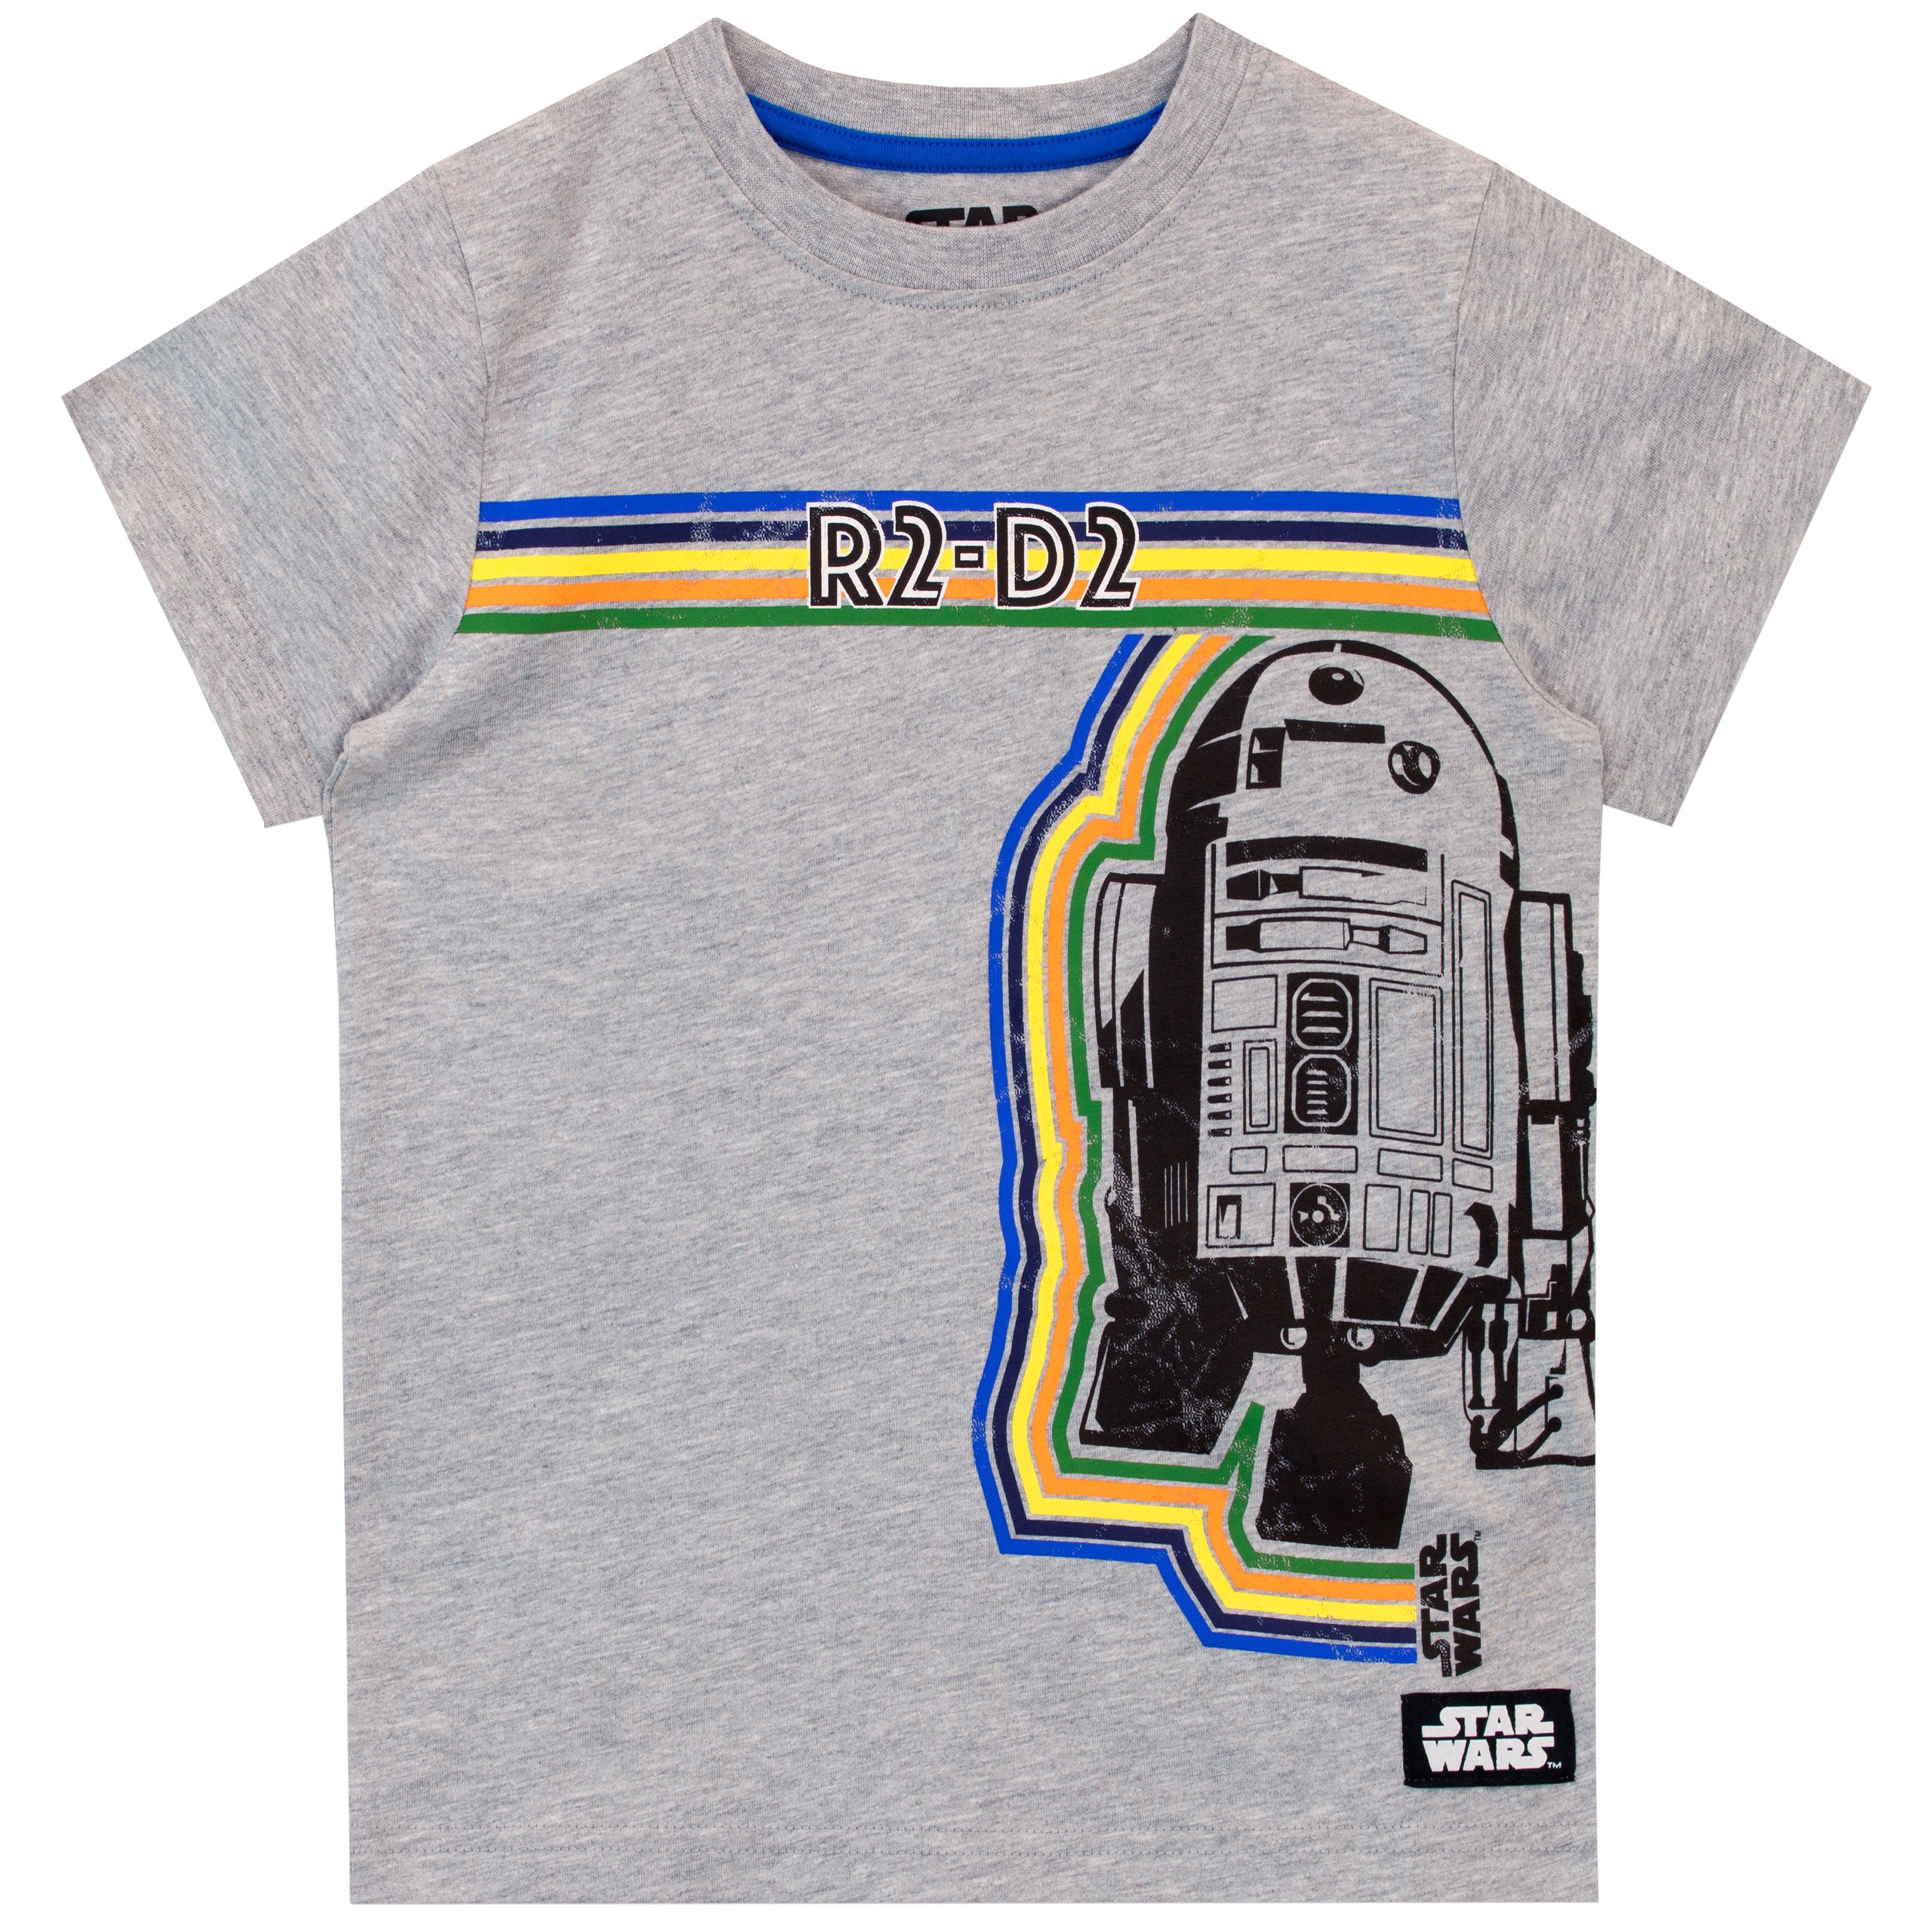 Wars T-Shirt Kids Star – R2-D2